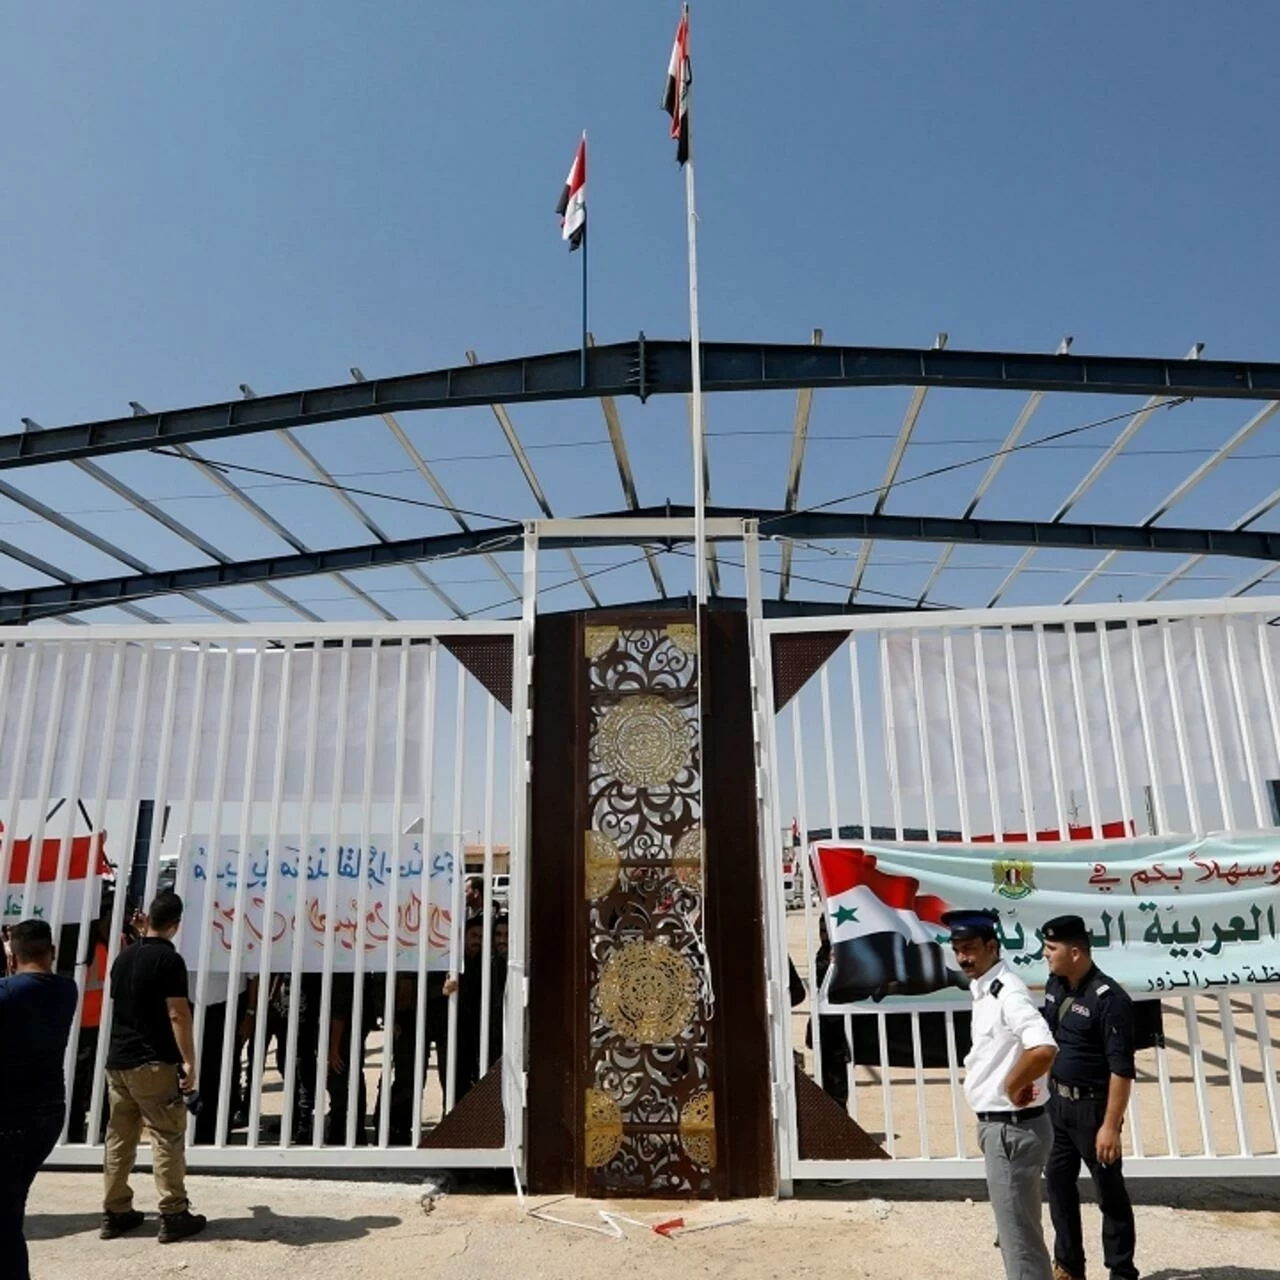 العراق يعلن فتح معبر القائم للسفر إلى سوريا